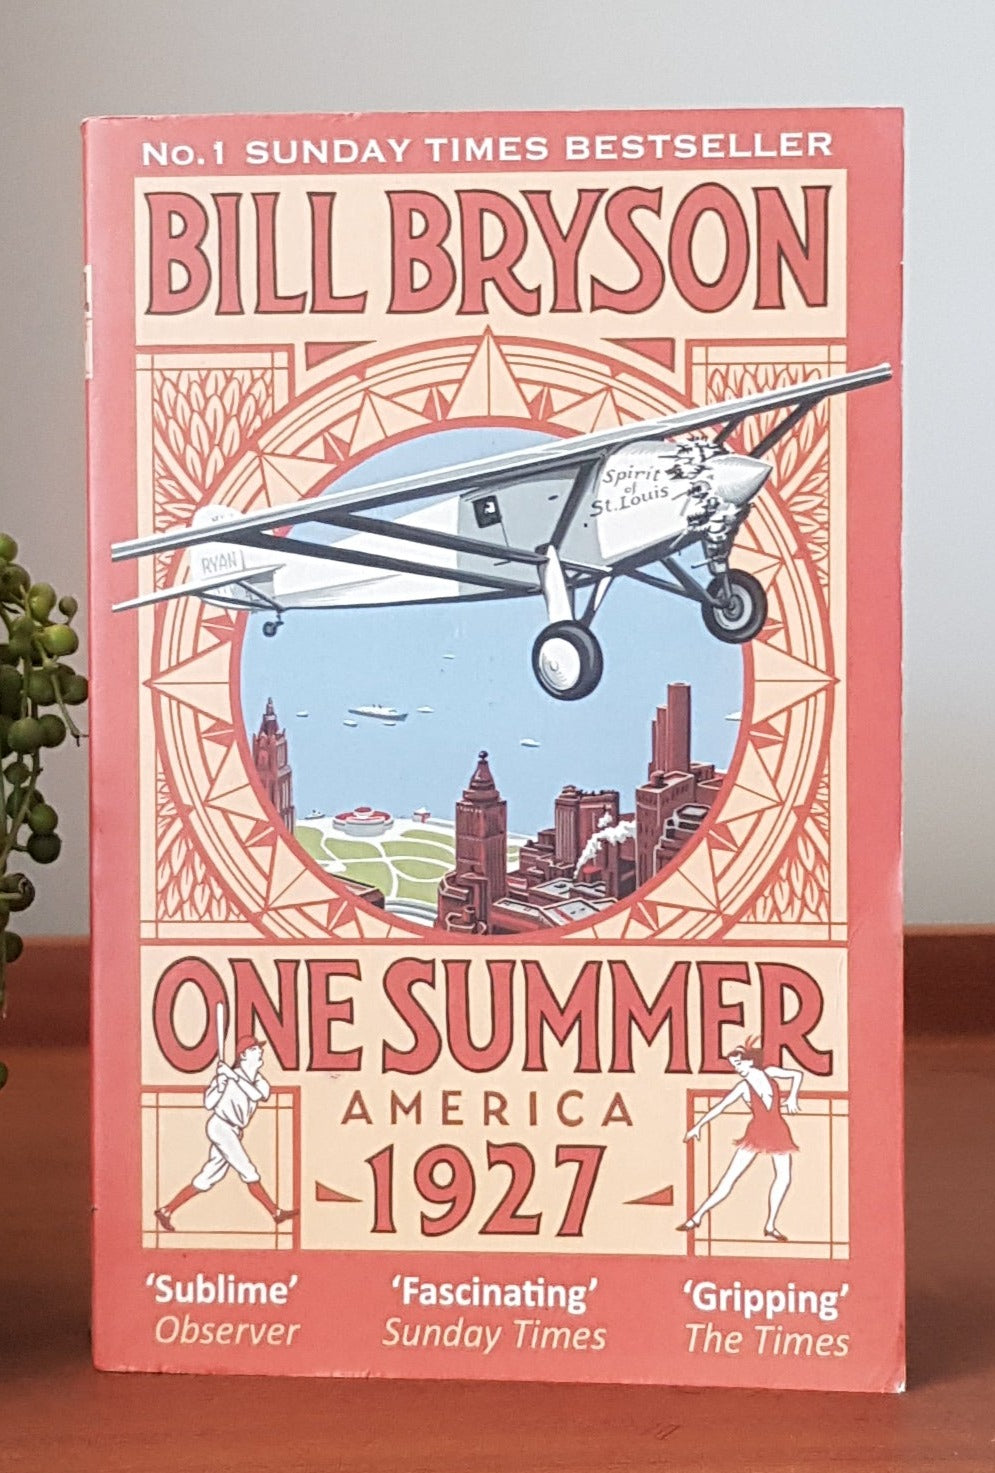 One Summer, America 1927 by Bill Bryson